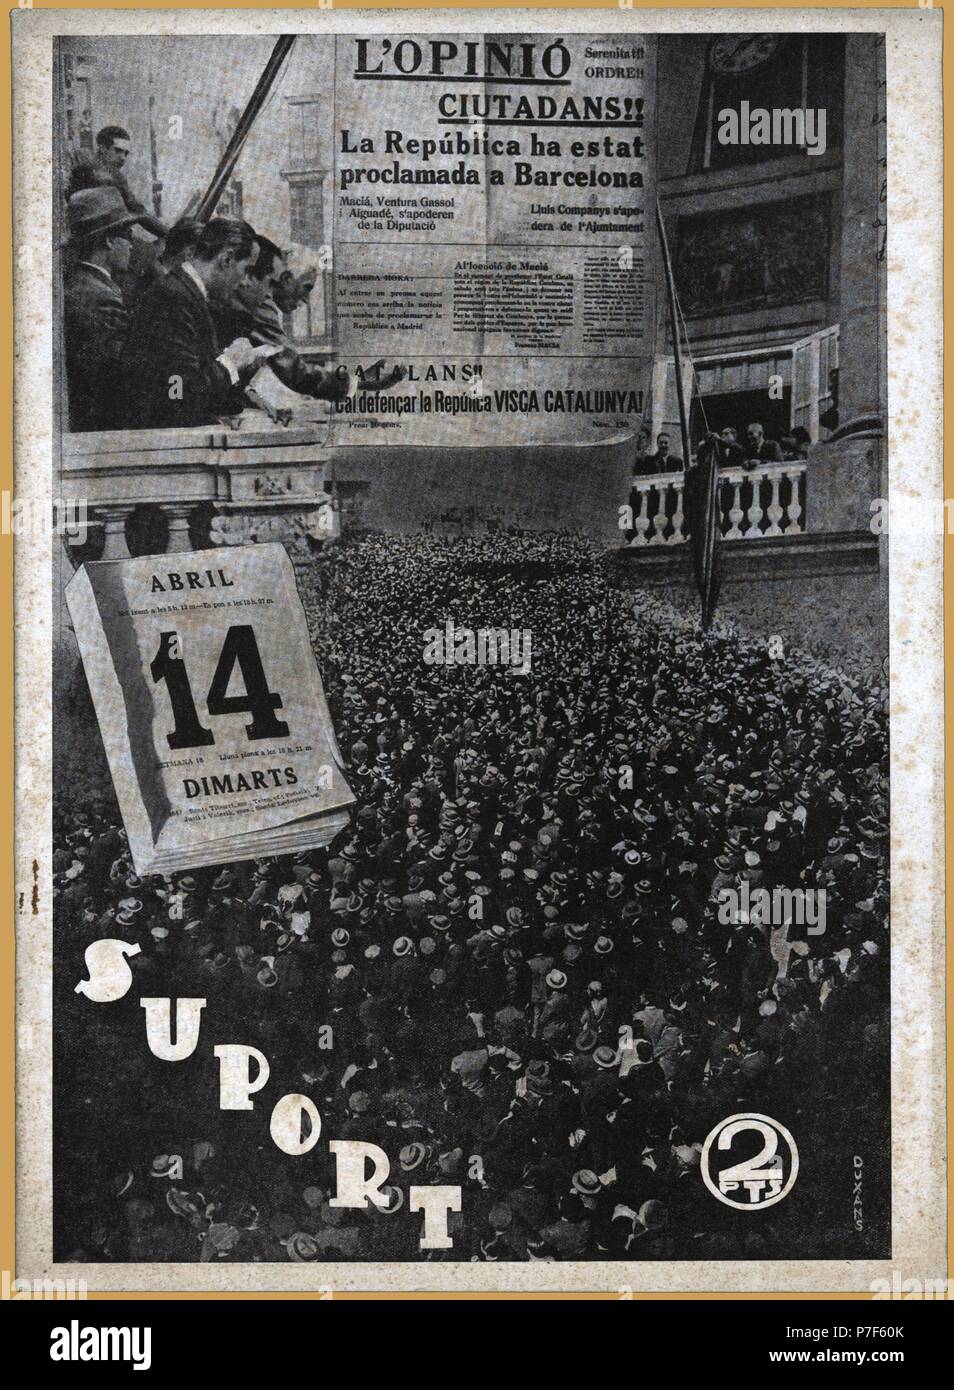 Portada de la revista SUPORT, editada por 'Socors Roig de Catalunya' en Barcelona. Abril de 1938. Stock Photo